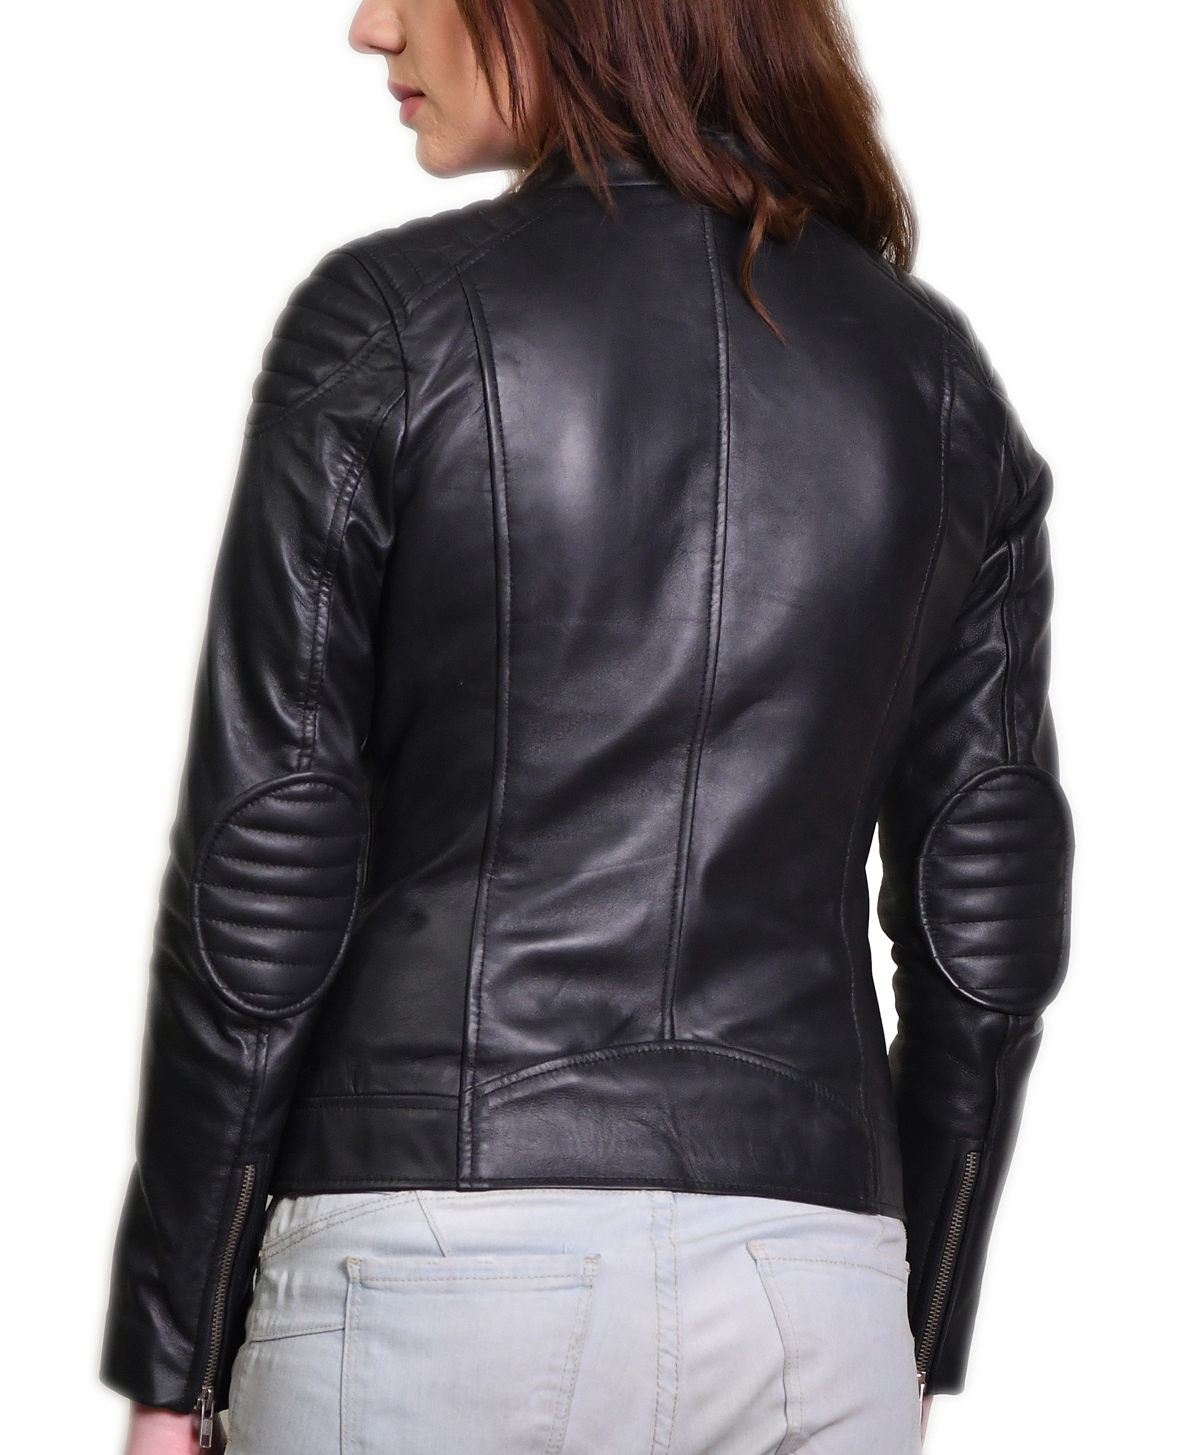 Billie Billie Black Leather Jacket